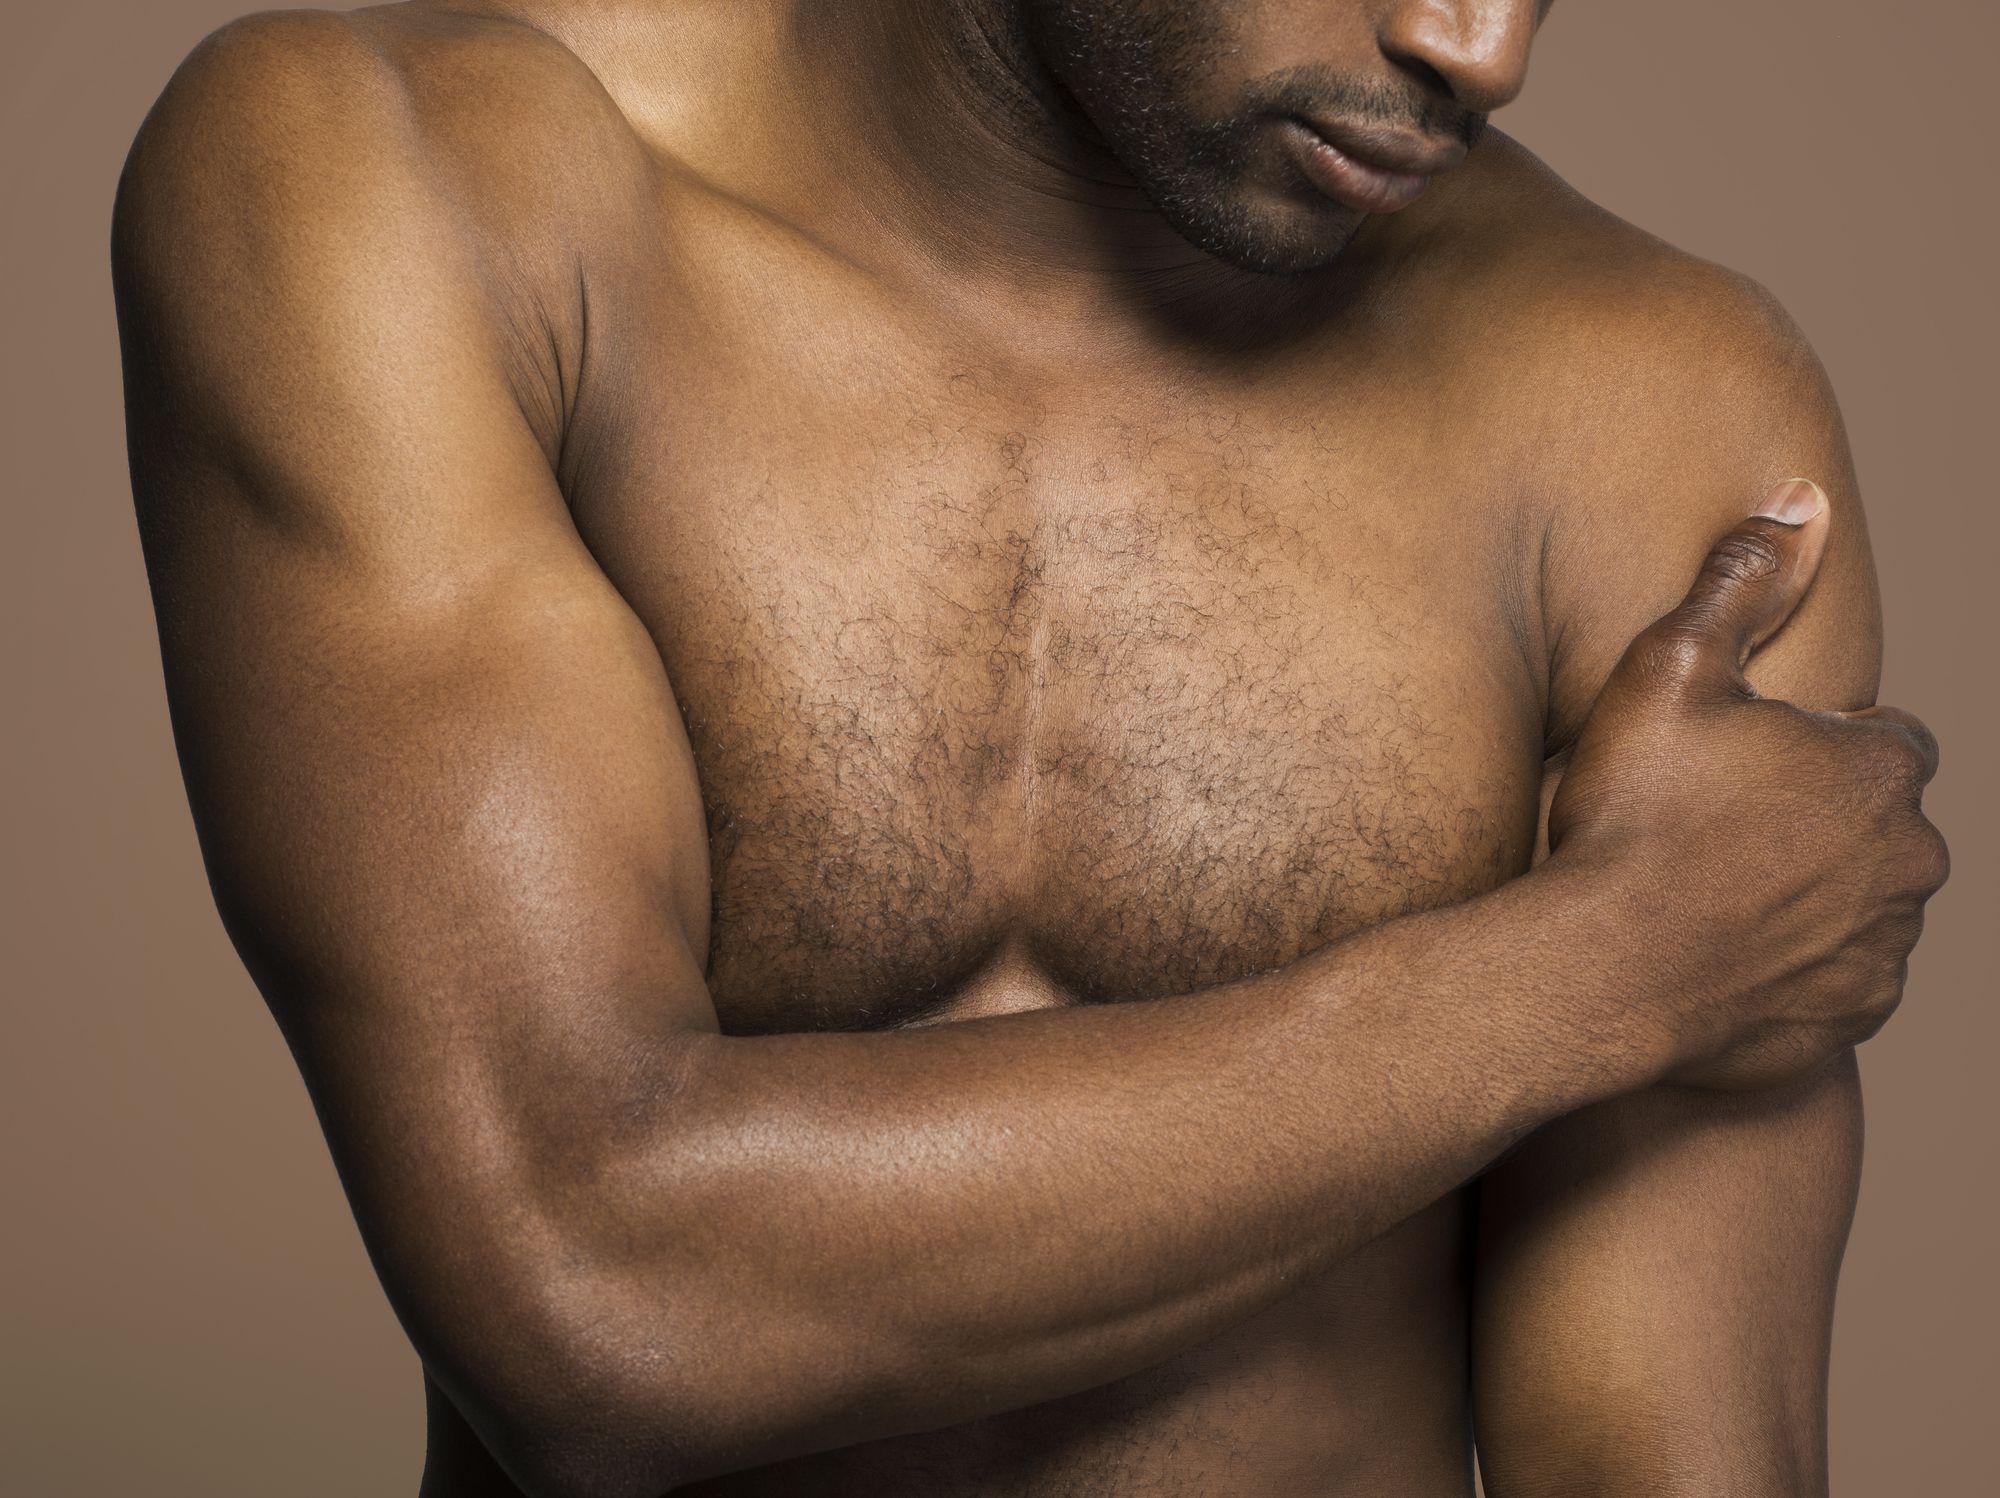 5+ Reasons for Sore Nipples in Men - Reasons Your Nipples Hurt